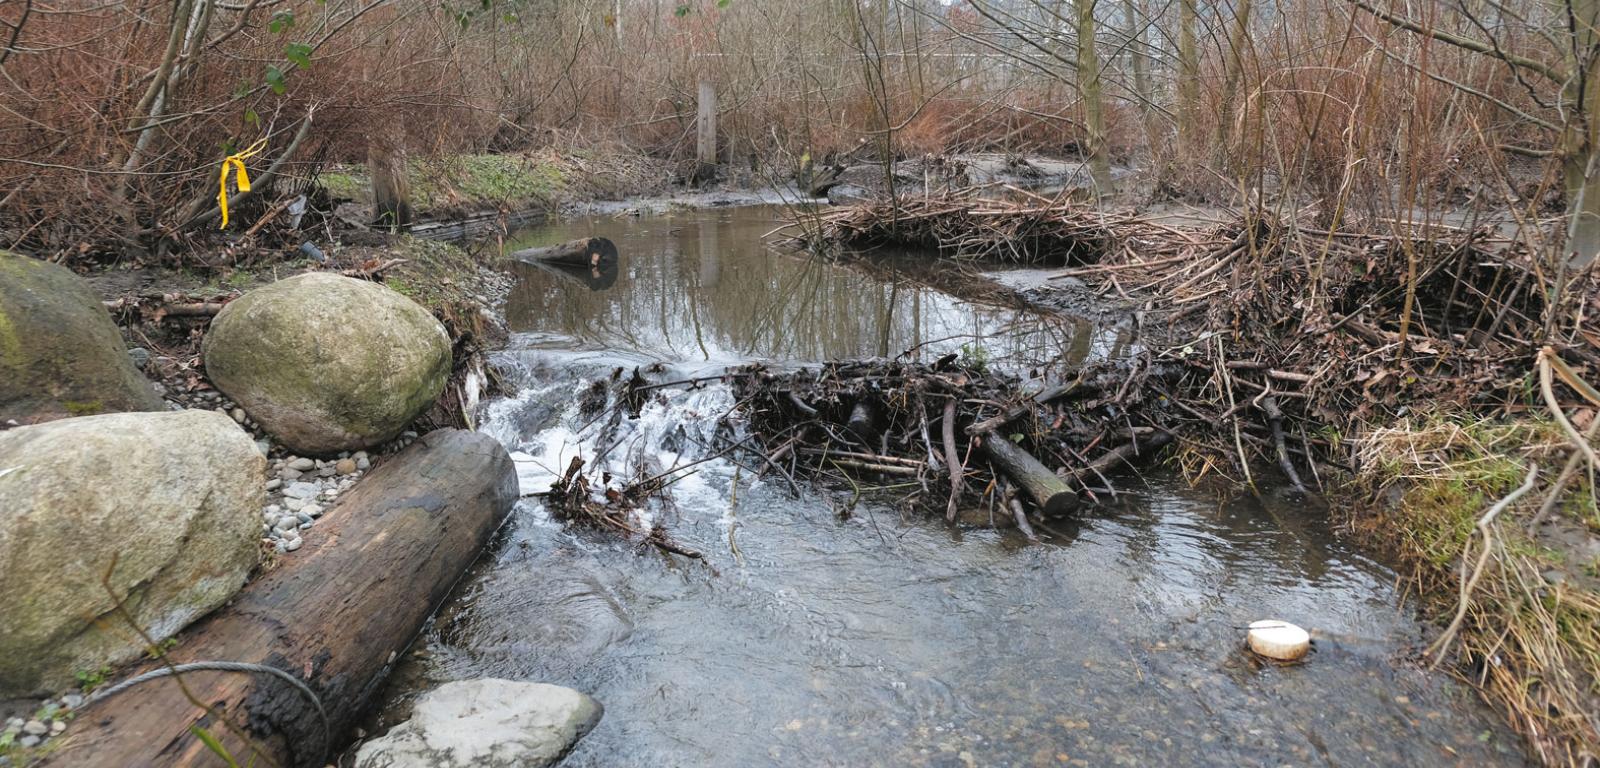 Umieszczone w korycie strumienia Thornton Creek głazy i pnie drzew powodują powstawanie wirów, w których chronią się ryby i owady. Wiry kierują wodę pod dno do strefy hyporeicznej, gdzie zostaje ona oczyszczona, po czym znów pojawia się w strumieniu. Blisko miejskiej zabudowy pojawiły się też bobry, które zbudowały tamę.